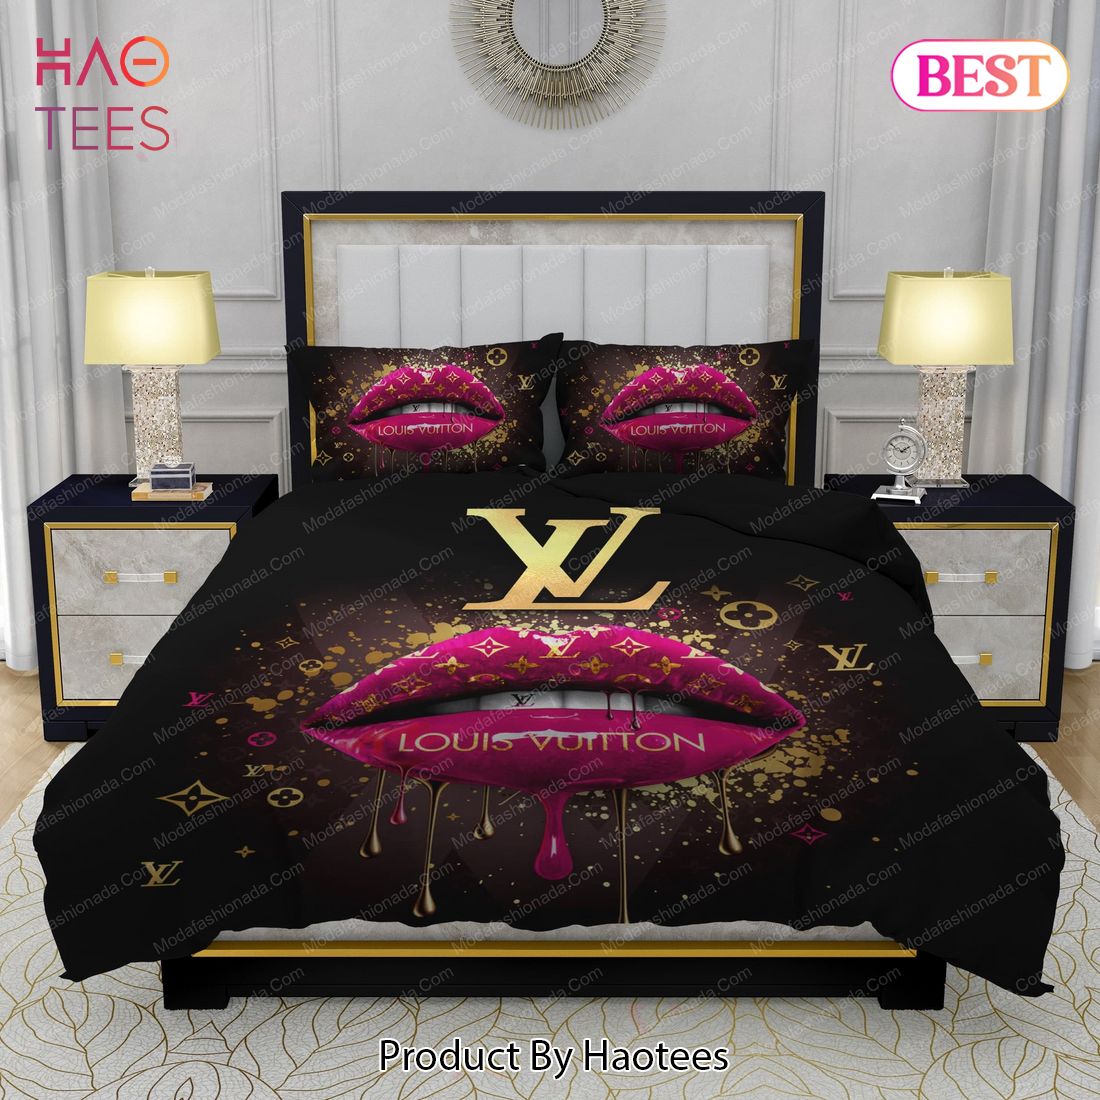 Supreme Louis Vuitton Black Background Bedding Sets Bed Sets, Bedroom Sets, Comforter Sets, Duvet Cover, Bedspread